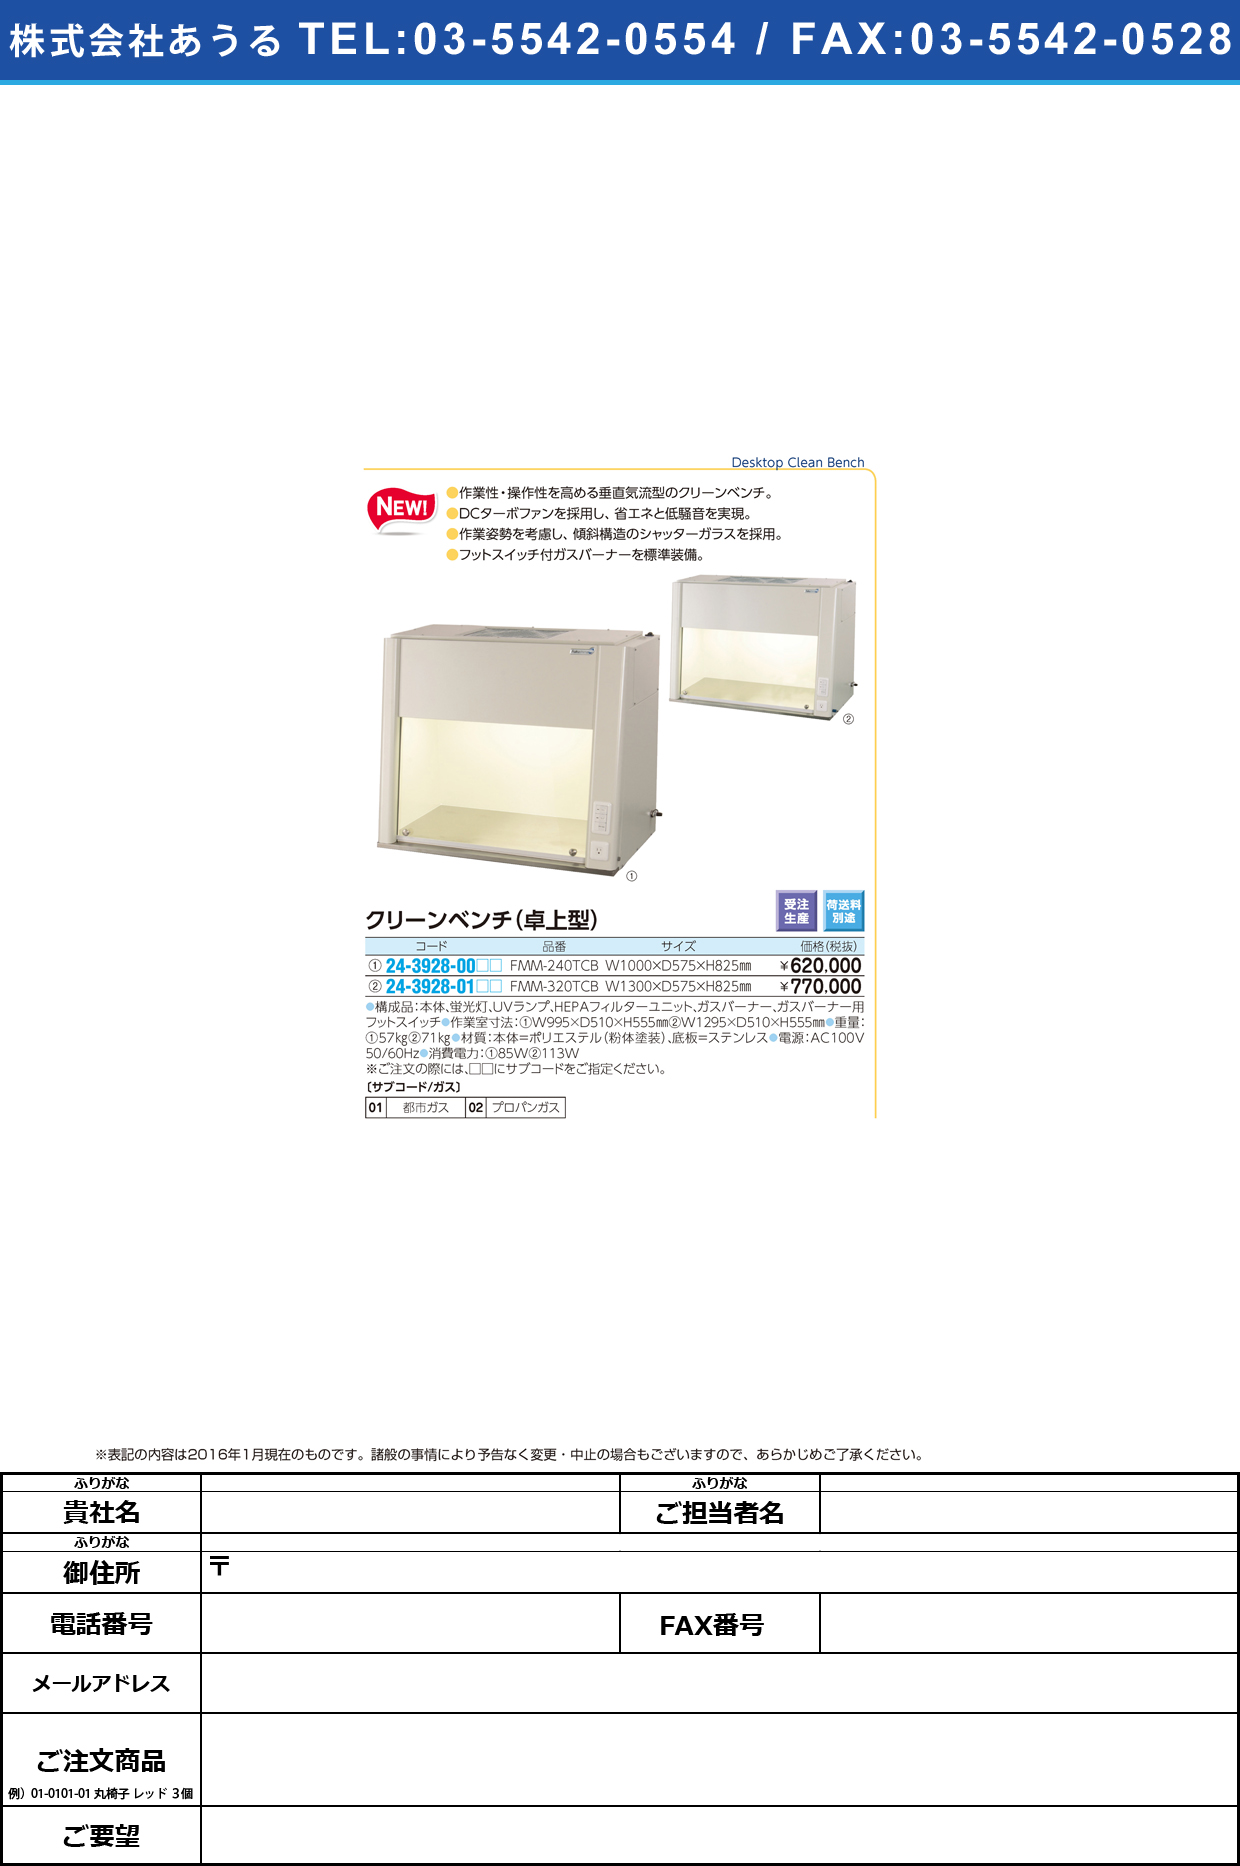 (24-3928-00)卓上型クリーンベンチ ﾀｸｼﾞｮｳｶﾞﾀｸﾘｰﾝﾍﾞﾝﾁ FMM-240TCB(W1000)【1台単位】【2016年カタログ商品】